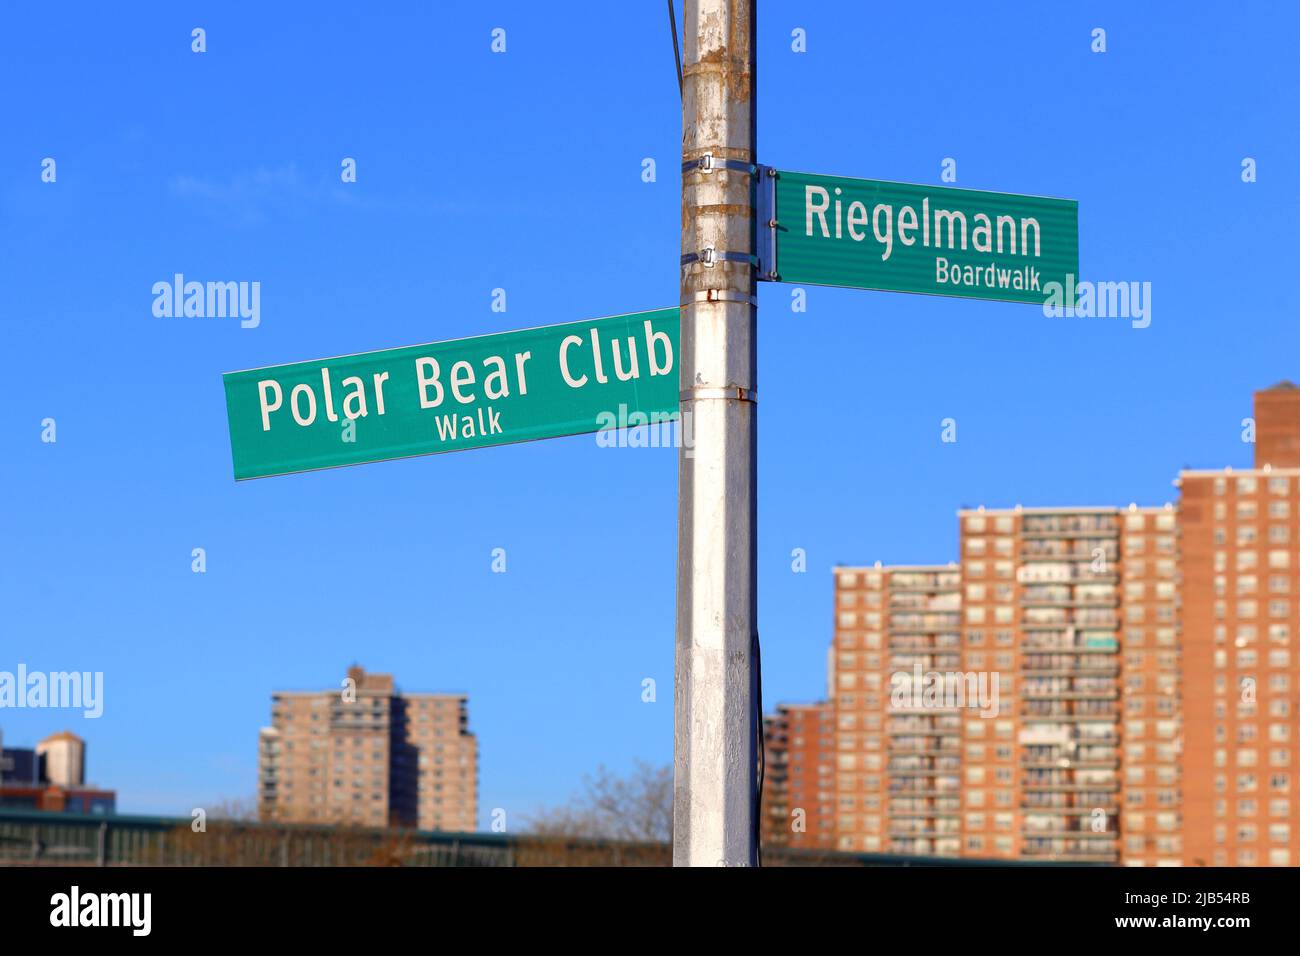 Señalización para el paseo Polar Bear Club y el paseo marítimo de Riegelmann en el paseo marítimo de Coney Island, Brooklyn, Nueva York Foto de stock